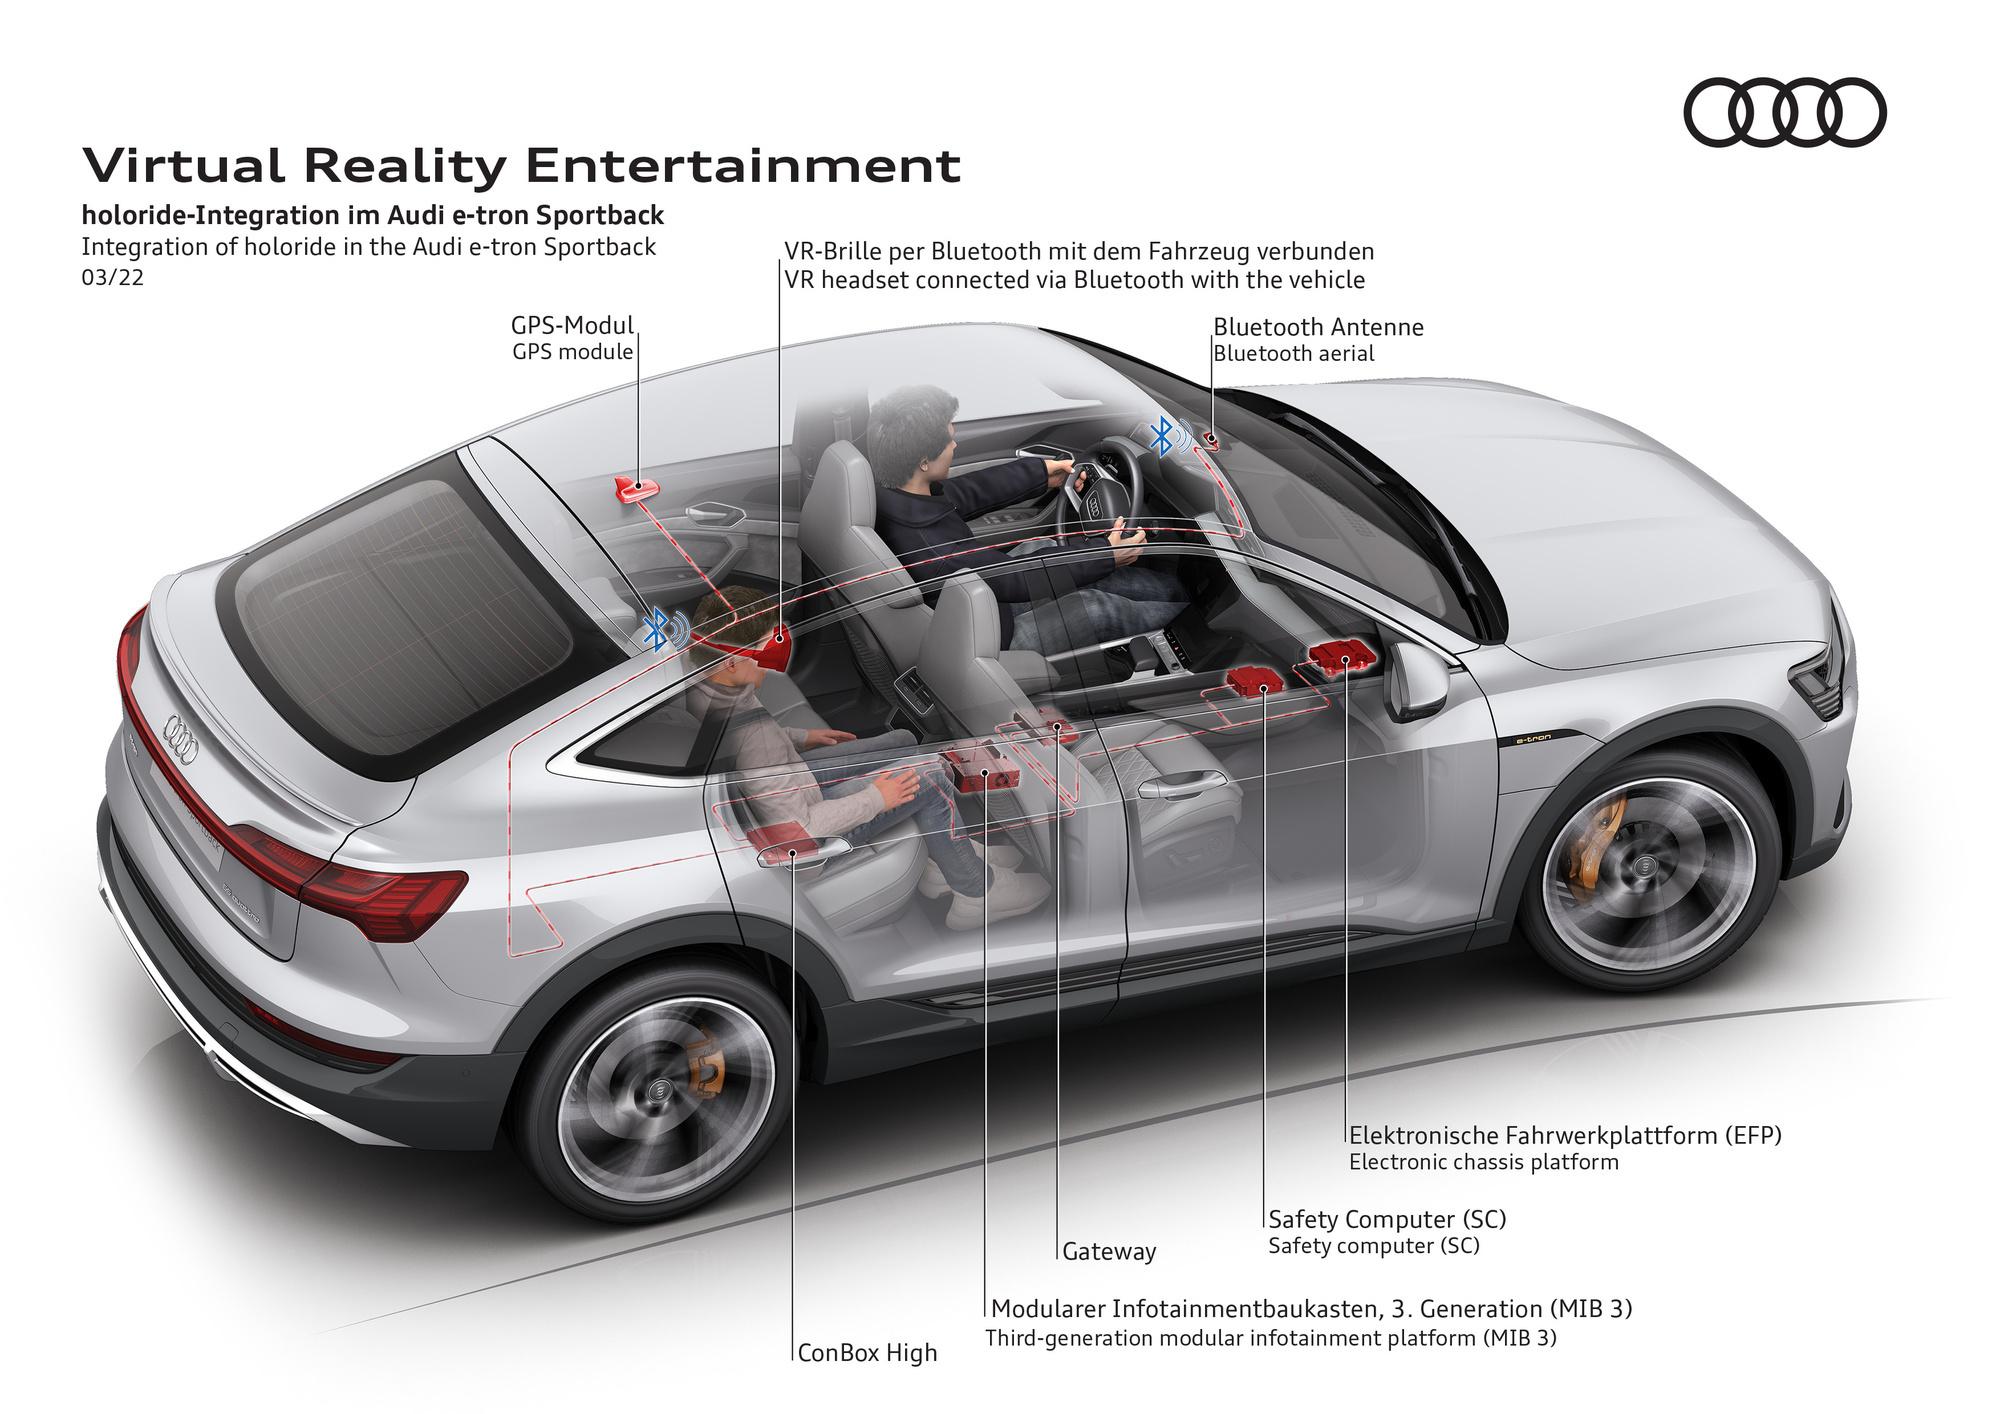 Avec 'holoride', Audi prévoit la réalité virtuelle sur la banquette arrière